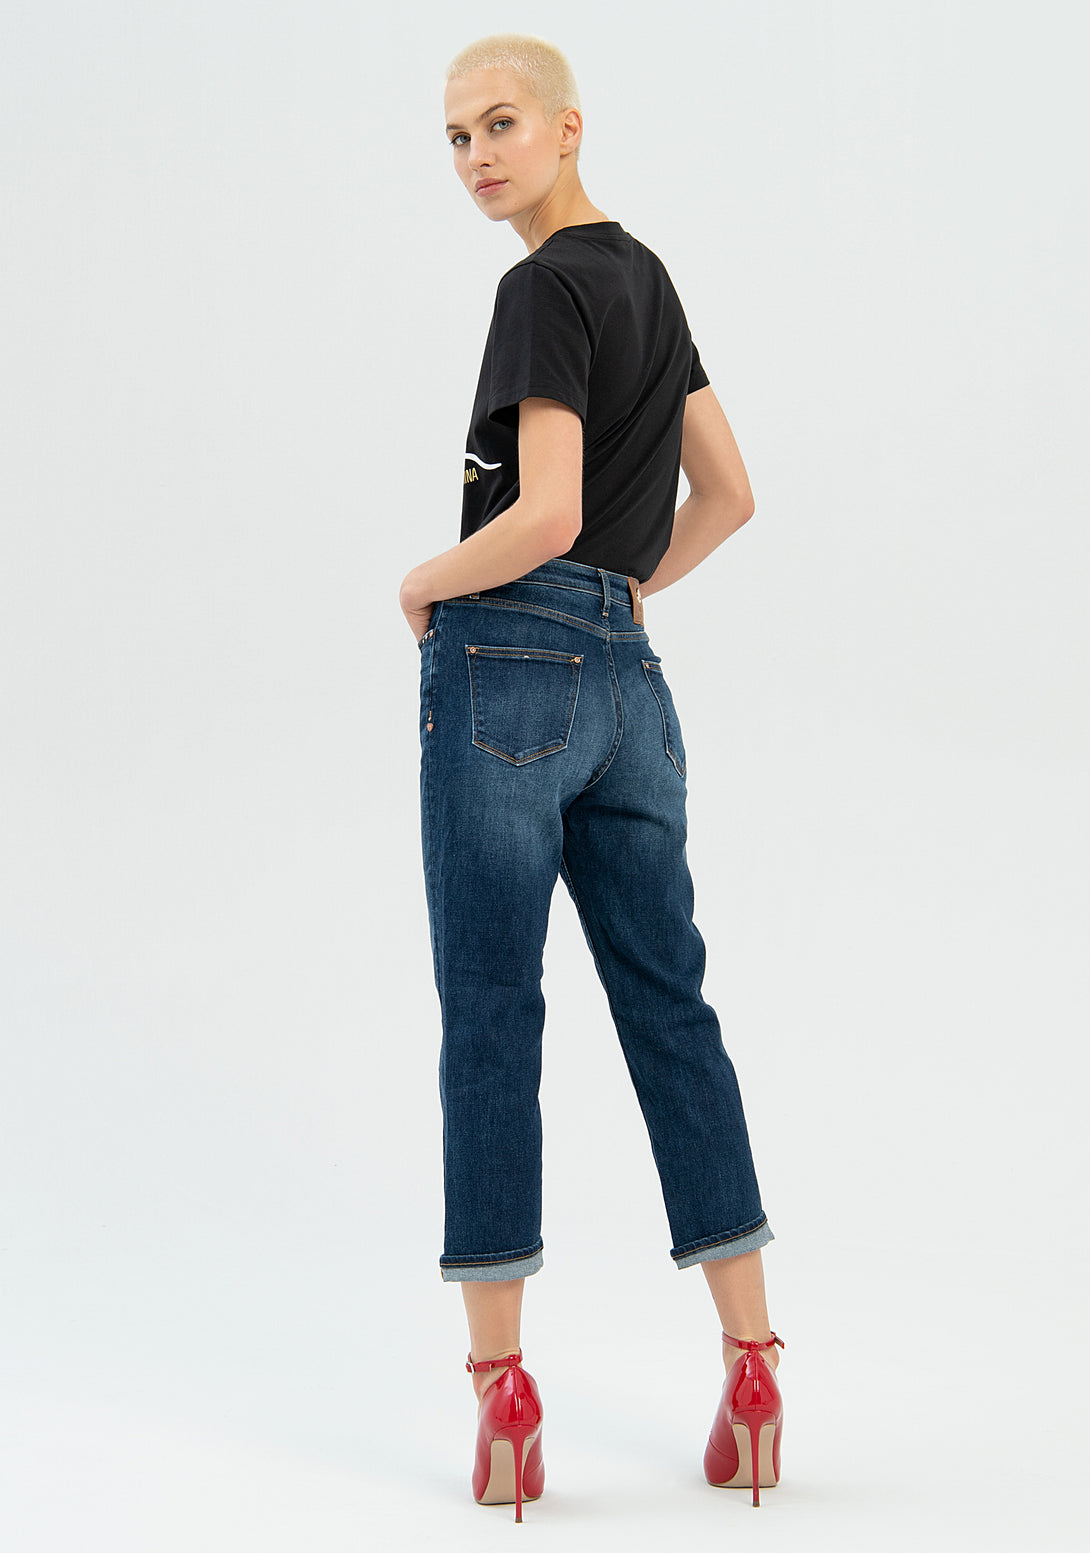 Jeans boyfriend cropped in denim con lavaggio medio-FRACOMINA-FP22WV9001D42002-130-JN-24